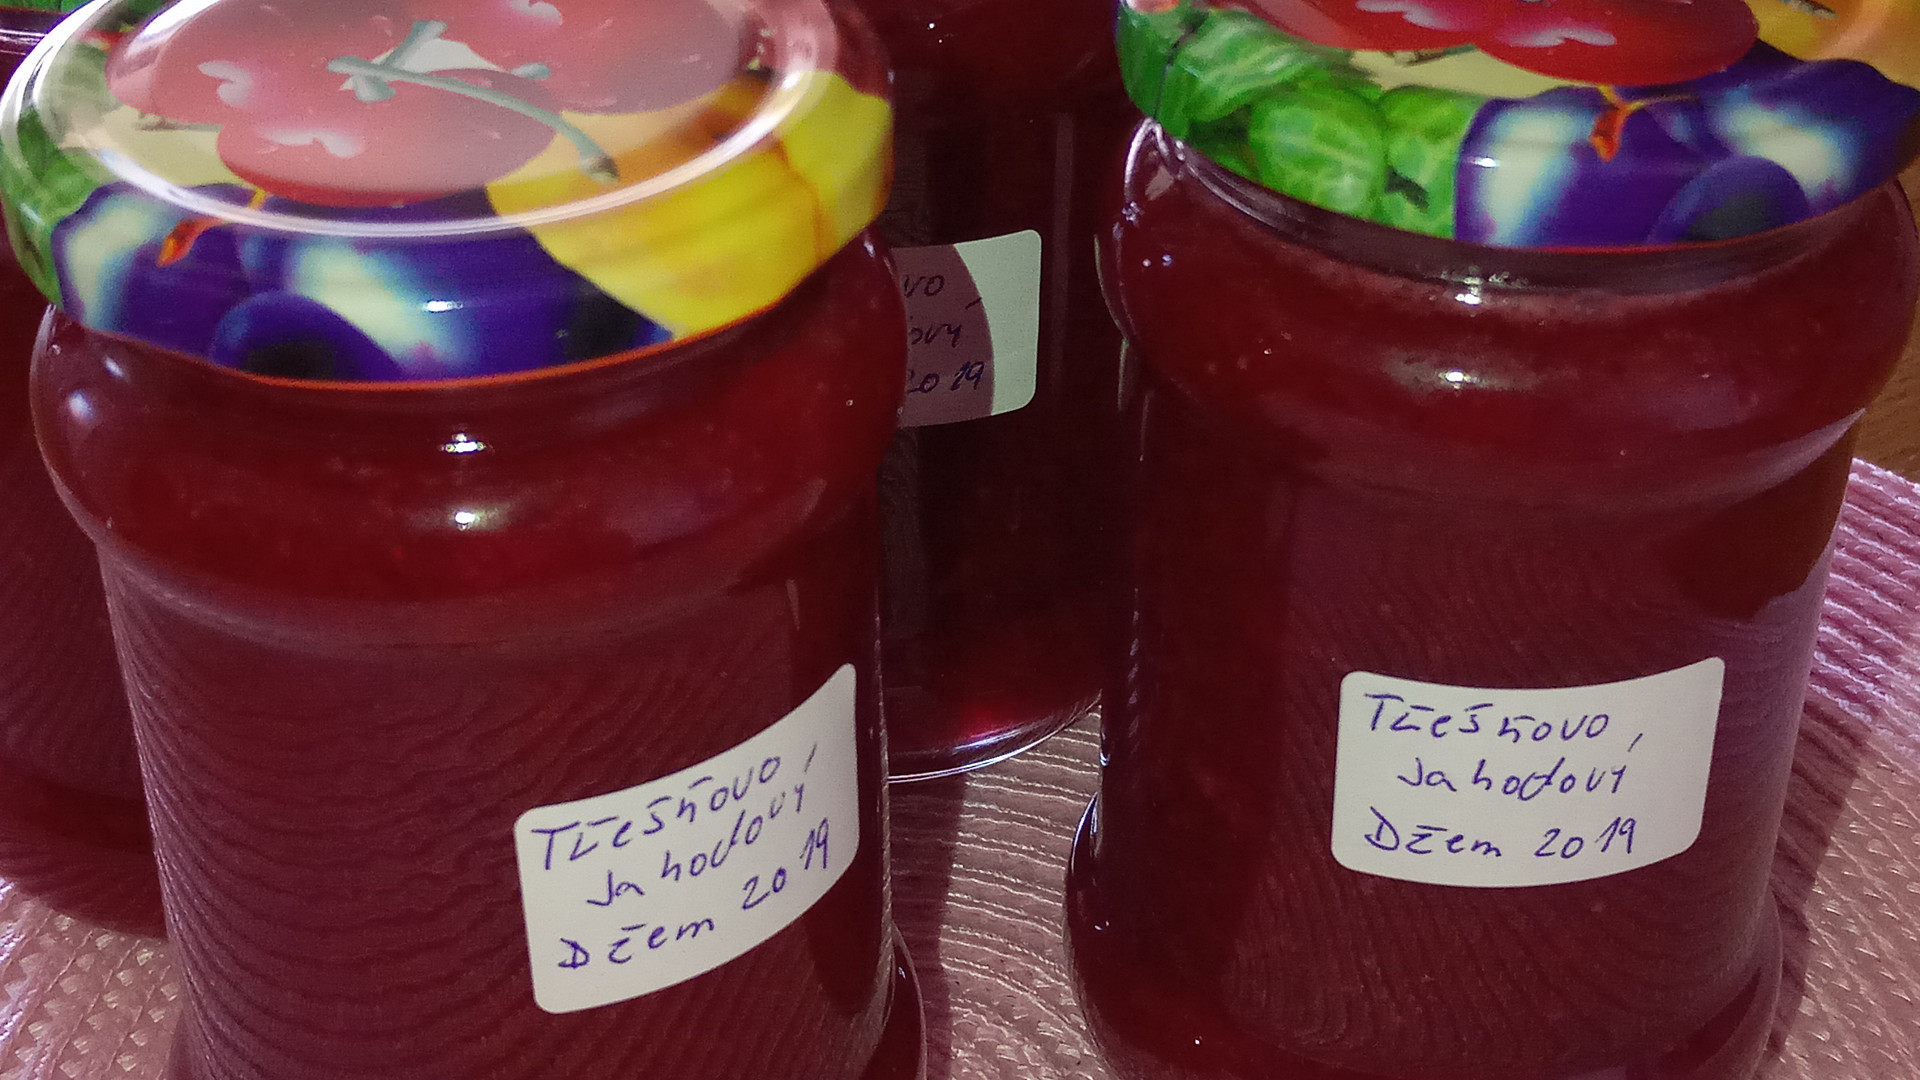 Třešňovo - jahodový džem s kousky ovoce